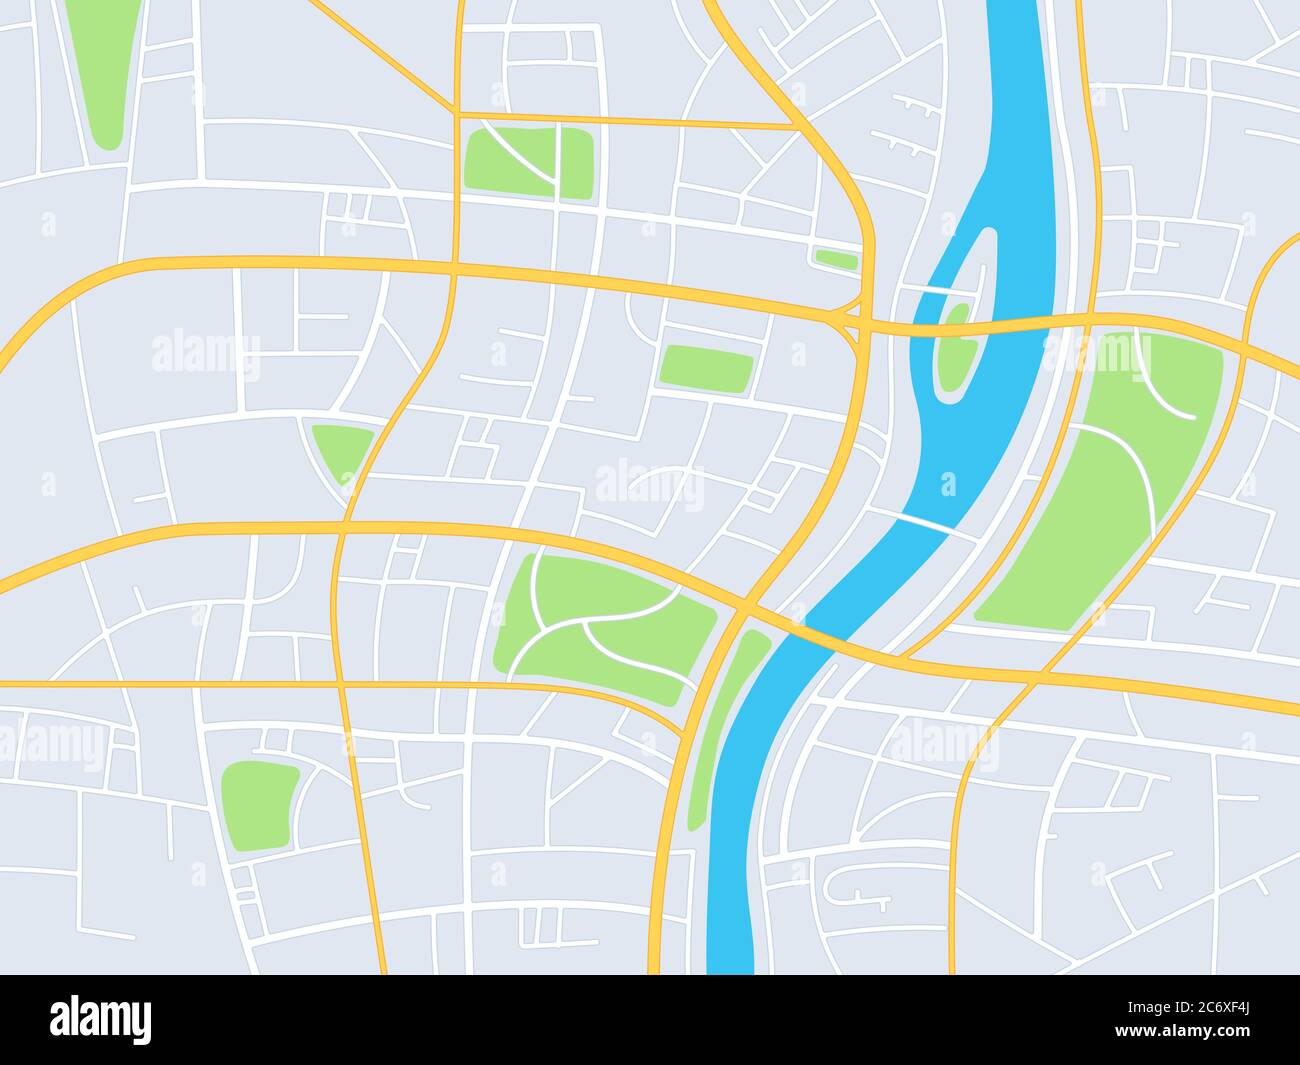 Plan de la ville. Plan de navigation GPS, rues de la ville avec parc et rivière, carte topographique de la route à direction abstraite, planification de voyage, image vectorielle Illustration de Vecteur